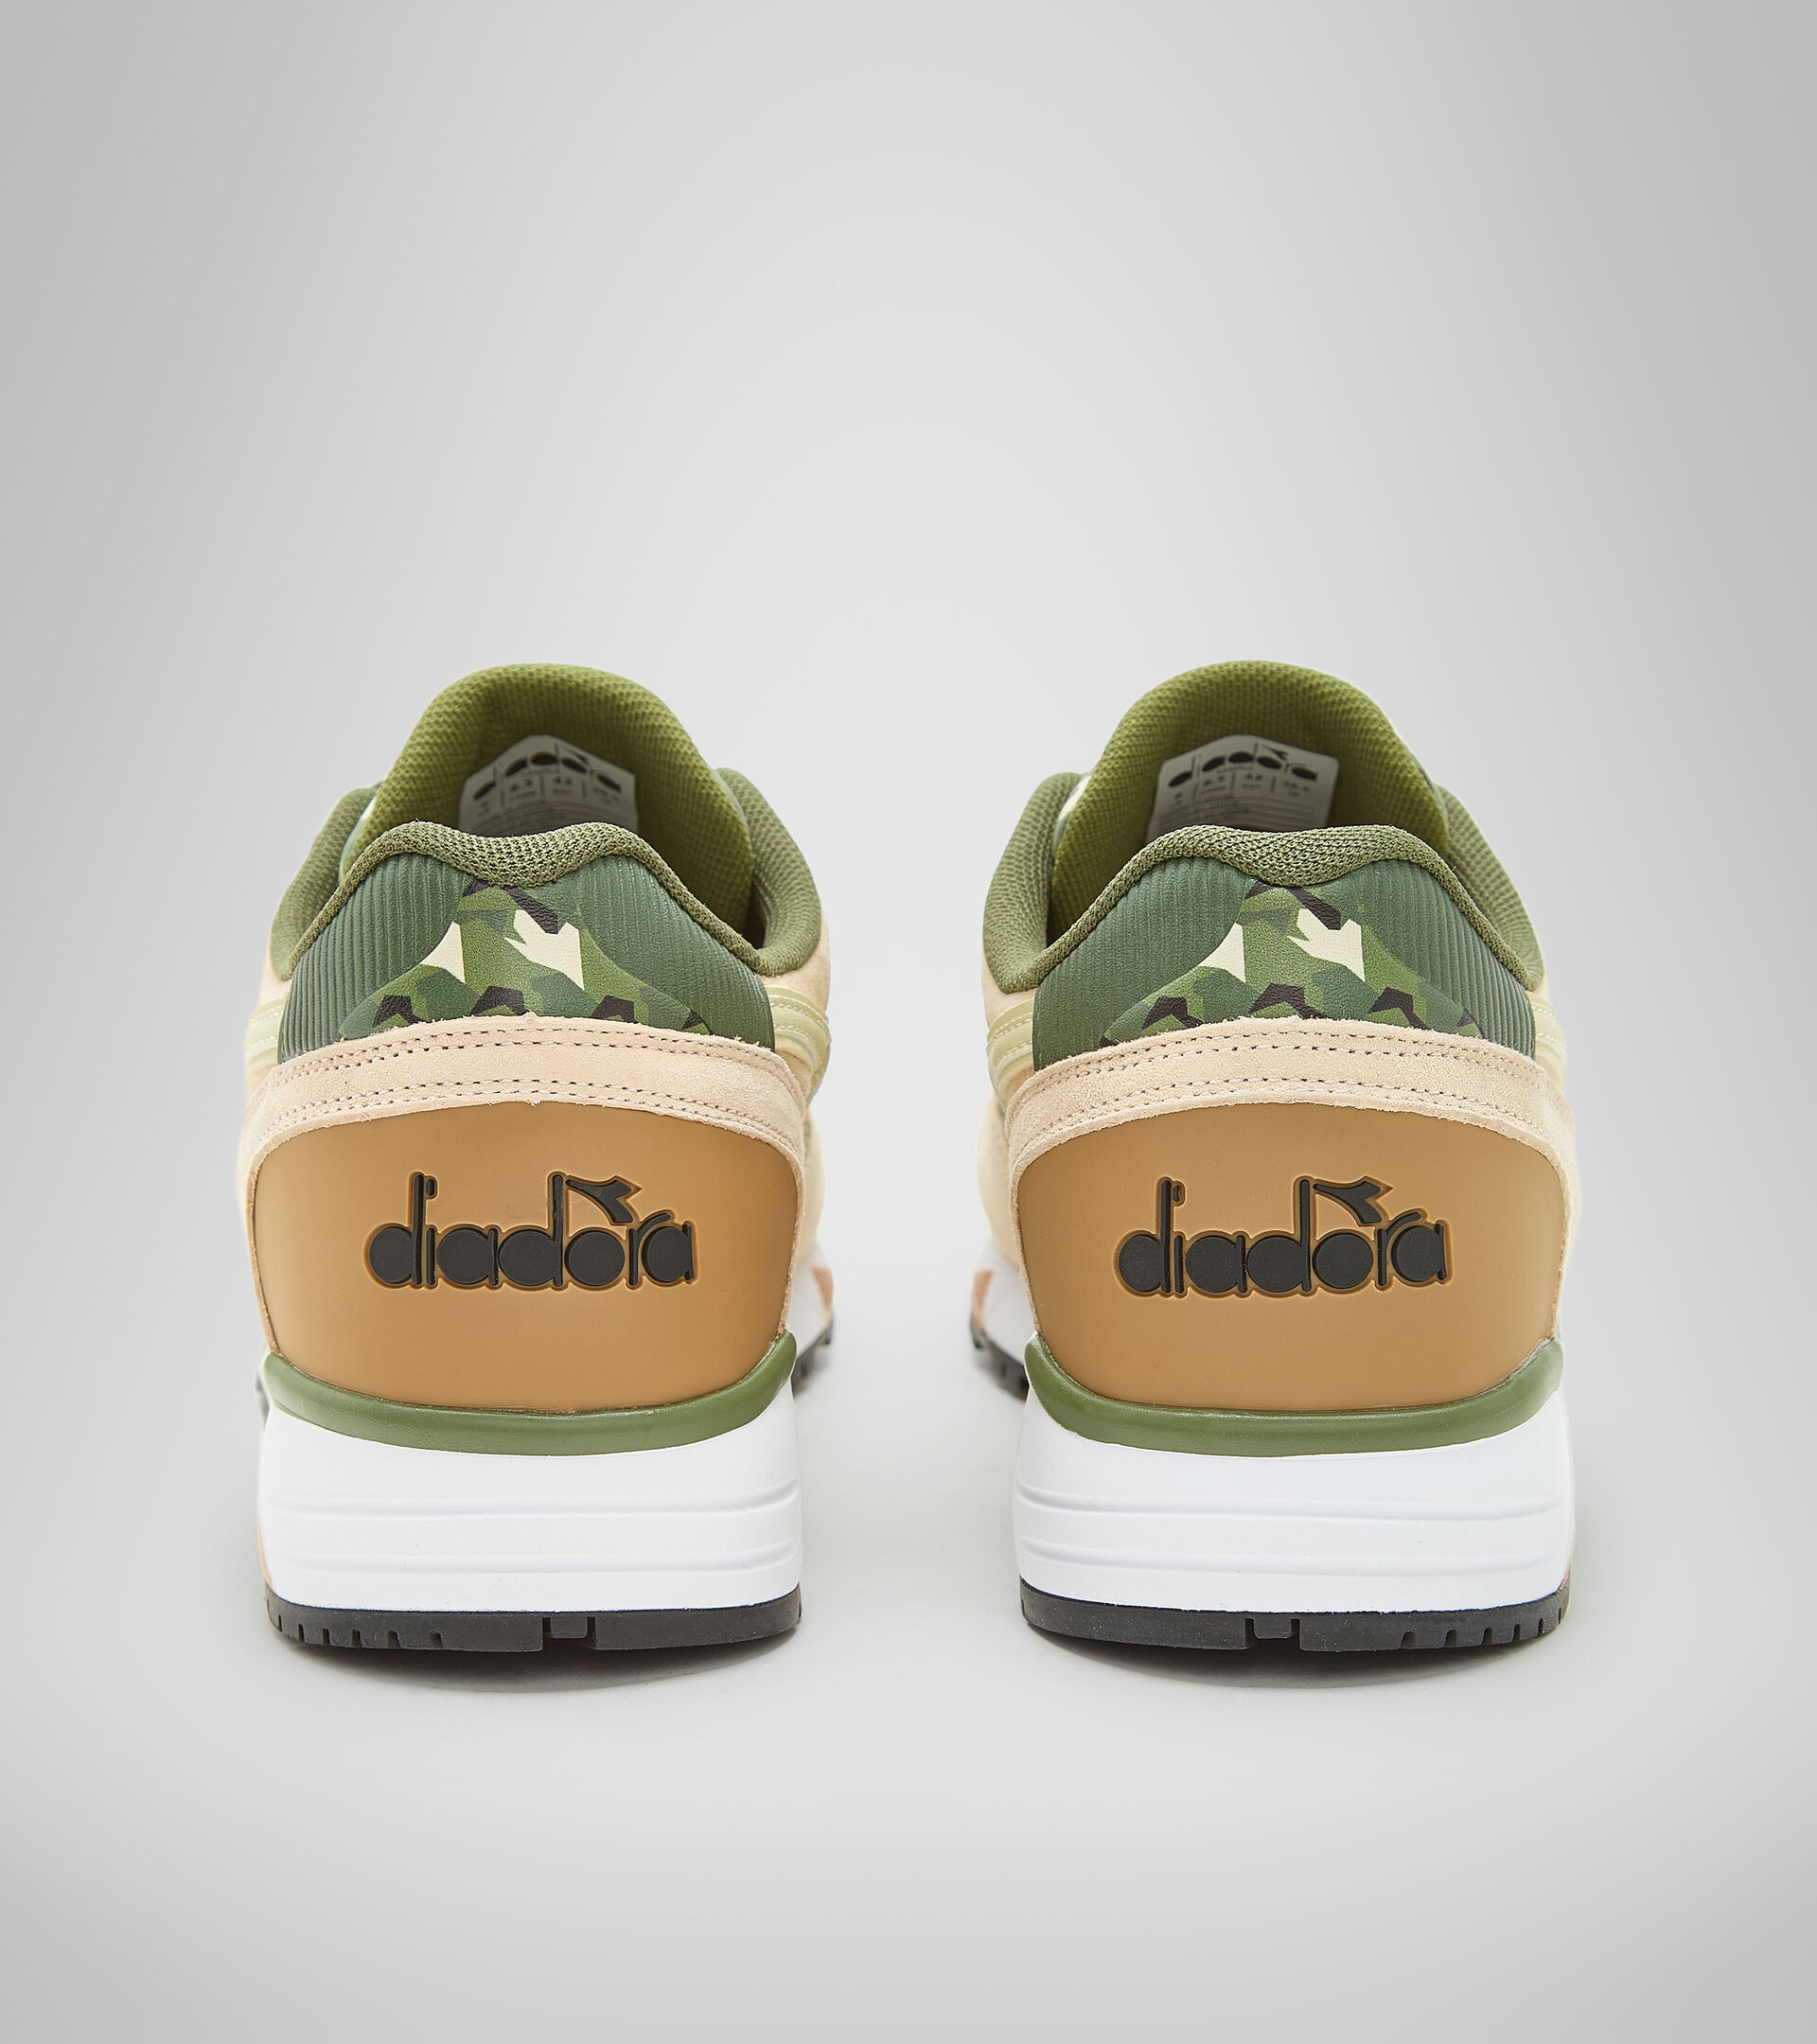 diadora sneakers for men green